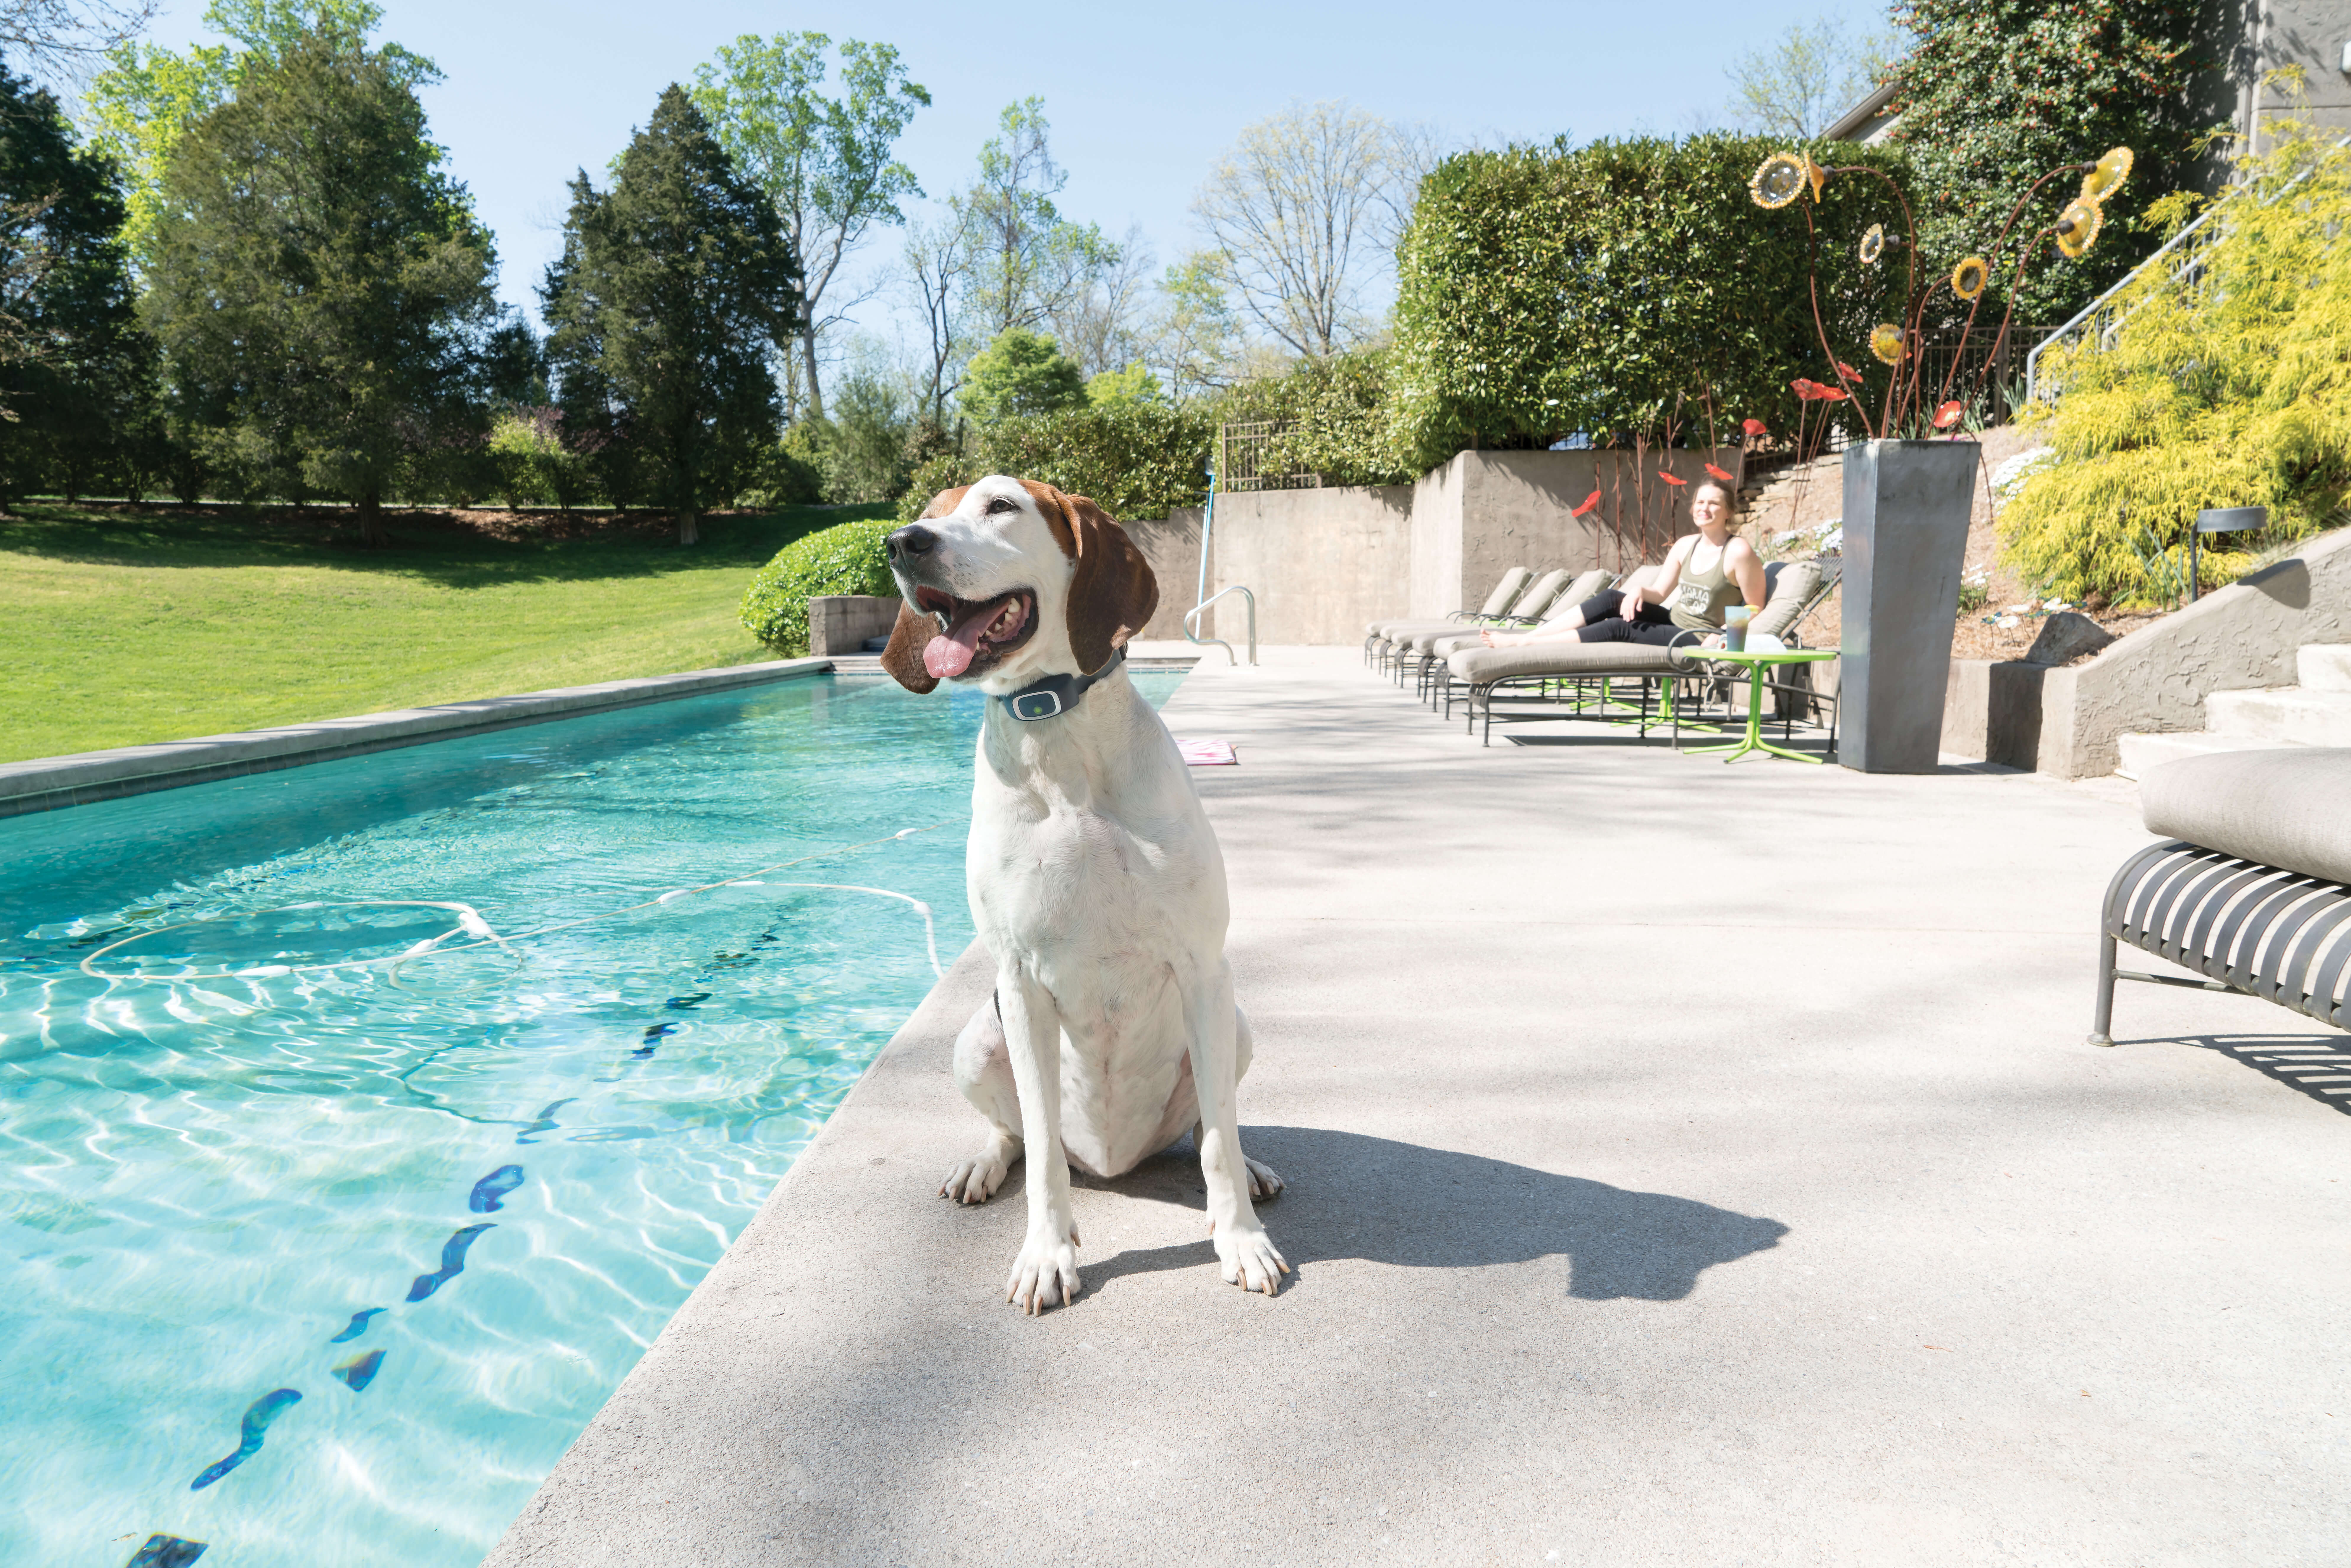 Dog wearing petsafe dog collar beside pool